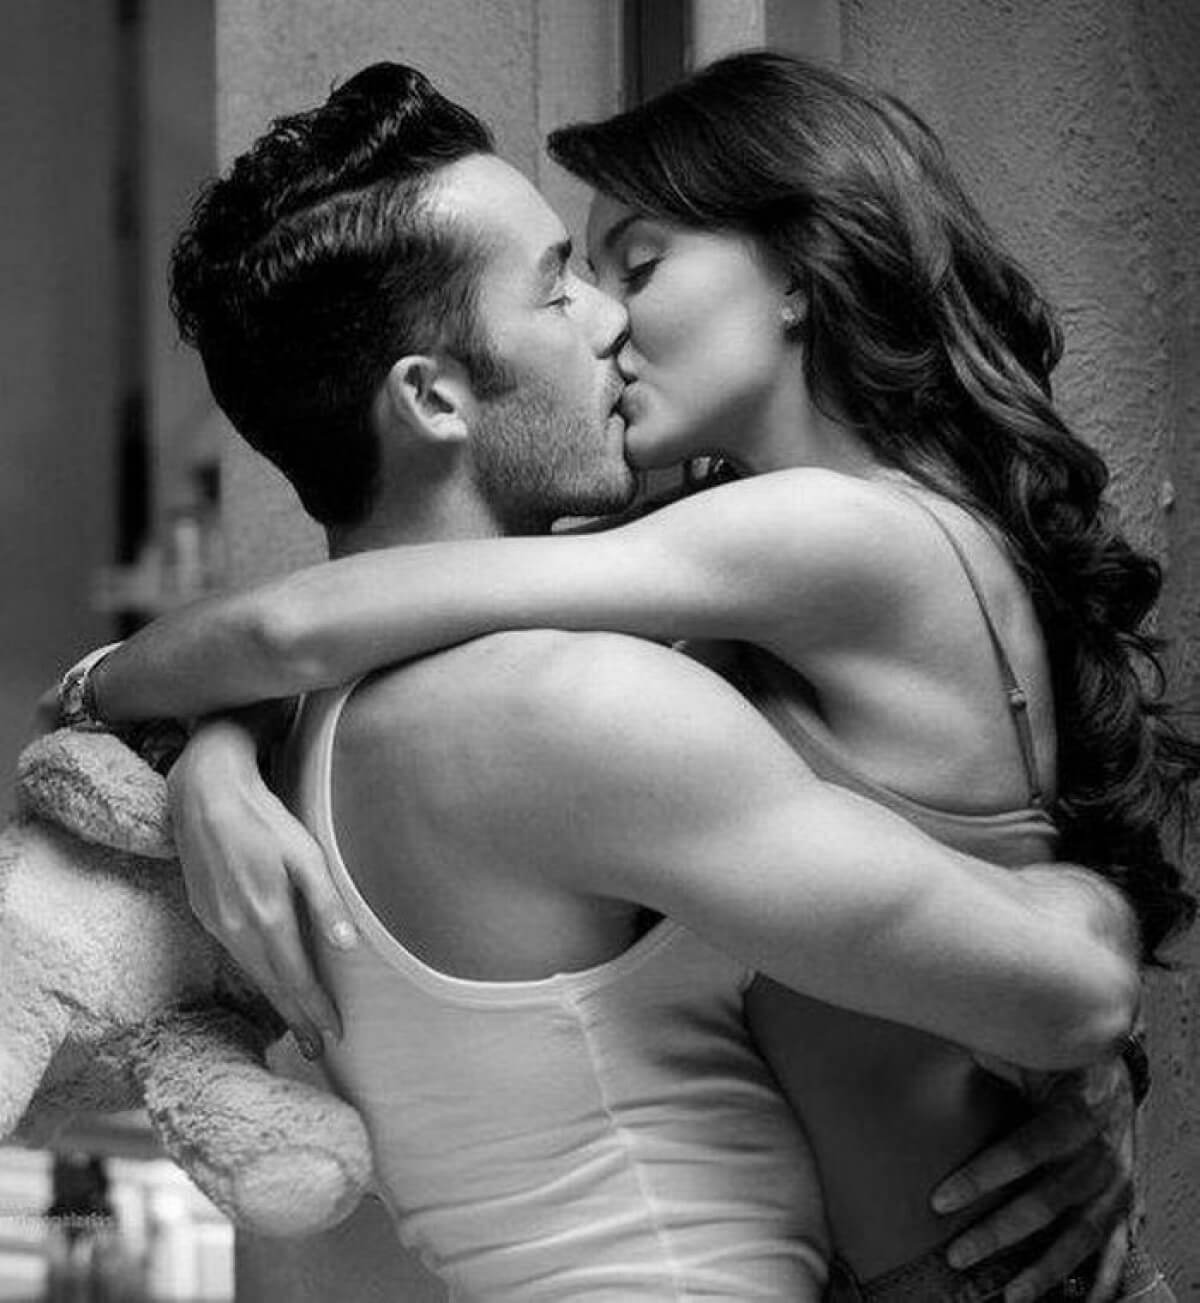 Фото нежного и романтического поцелуя между девушкой и парнем - 20 картинок 11.